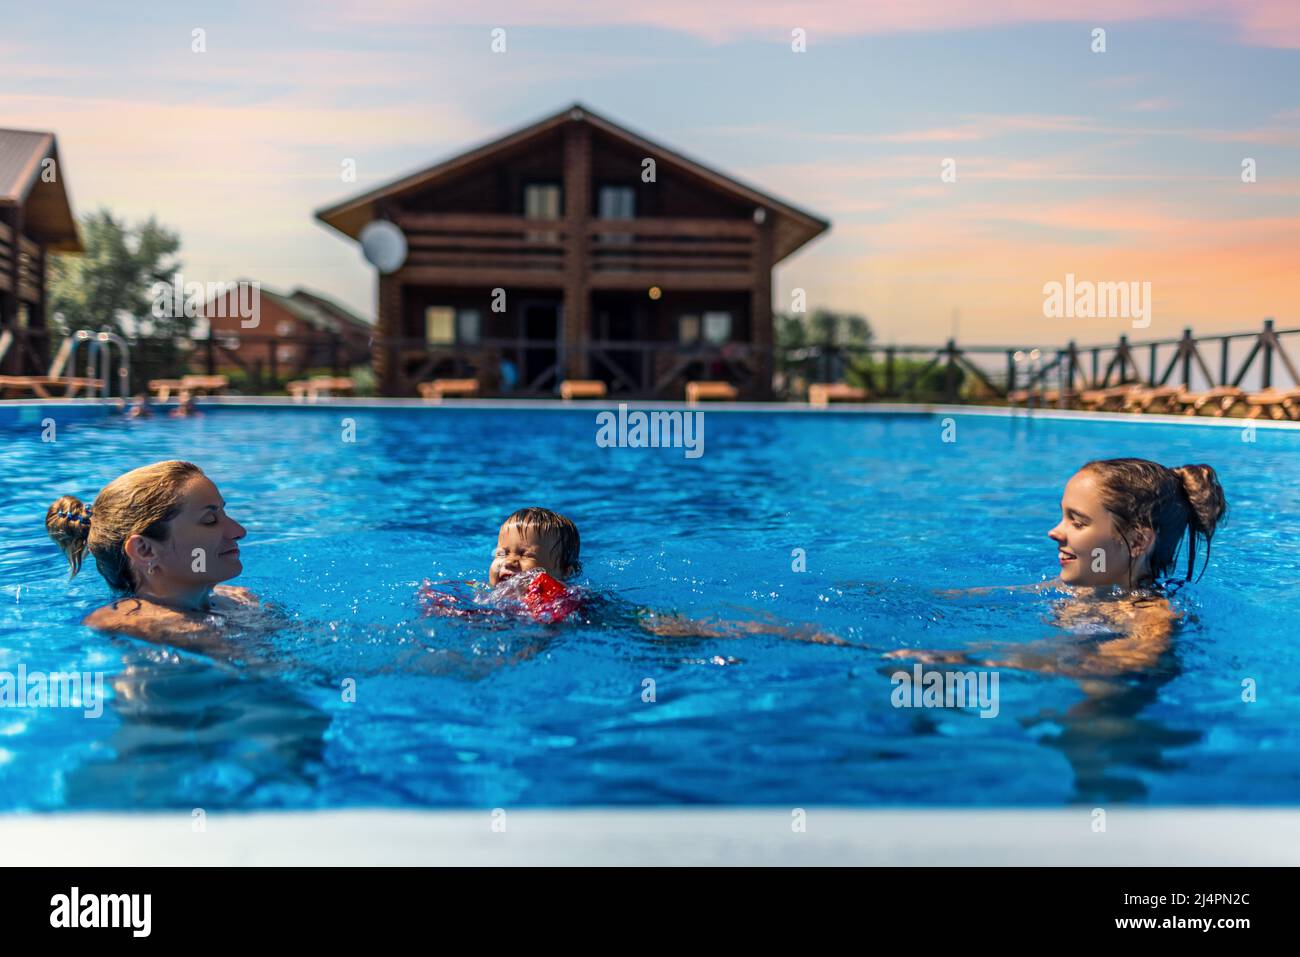 Felice bella mamma allegra gioca con i suoi figli, figlia maggiore e figlio piccolo in guaine luminose in una piscina blu con acqua trasparente chiaro Foto Stock